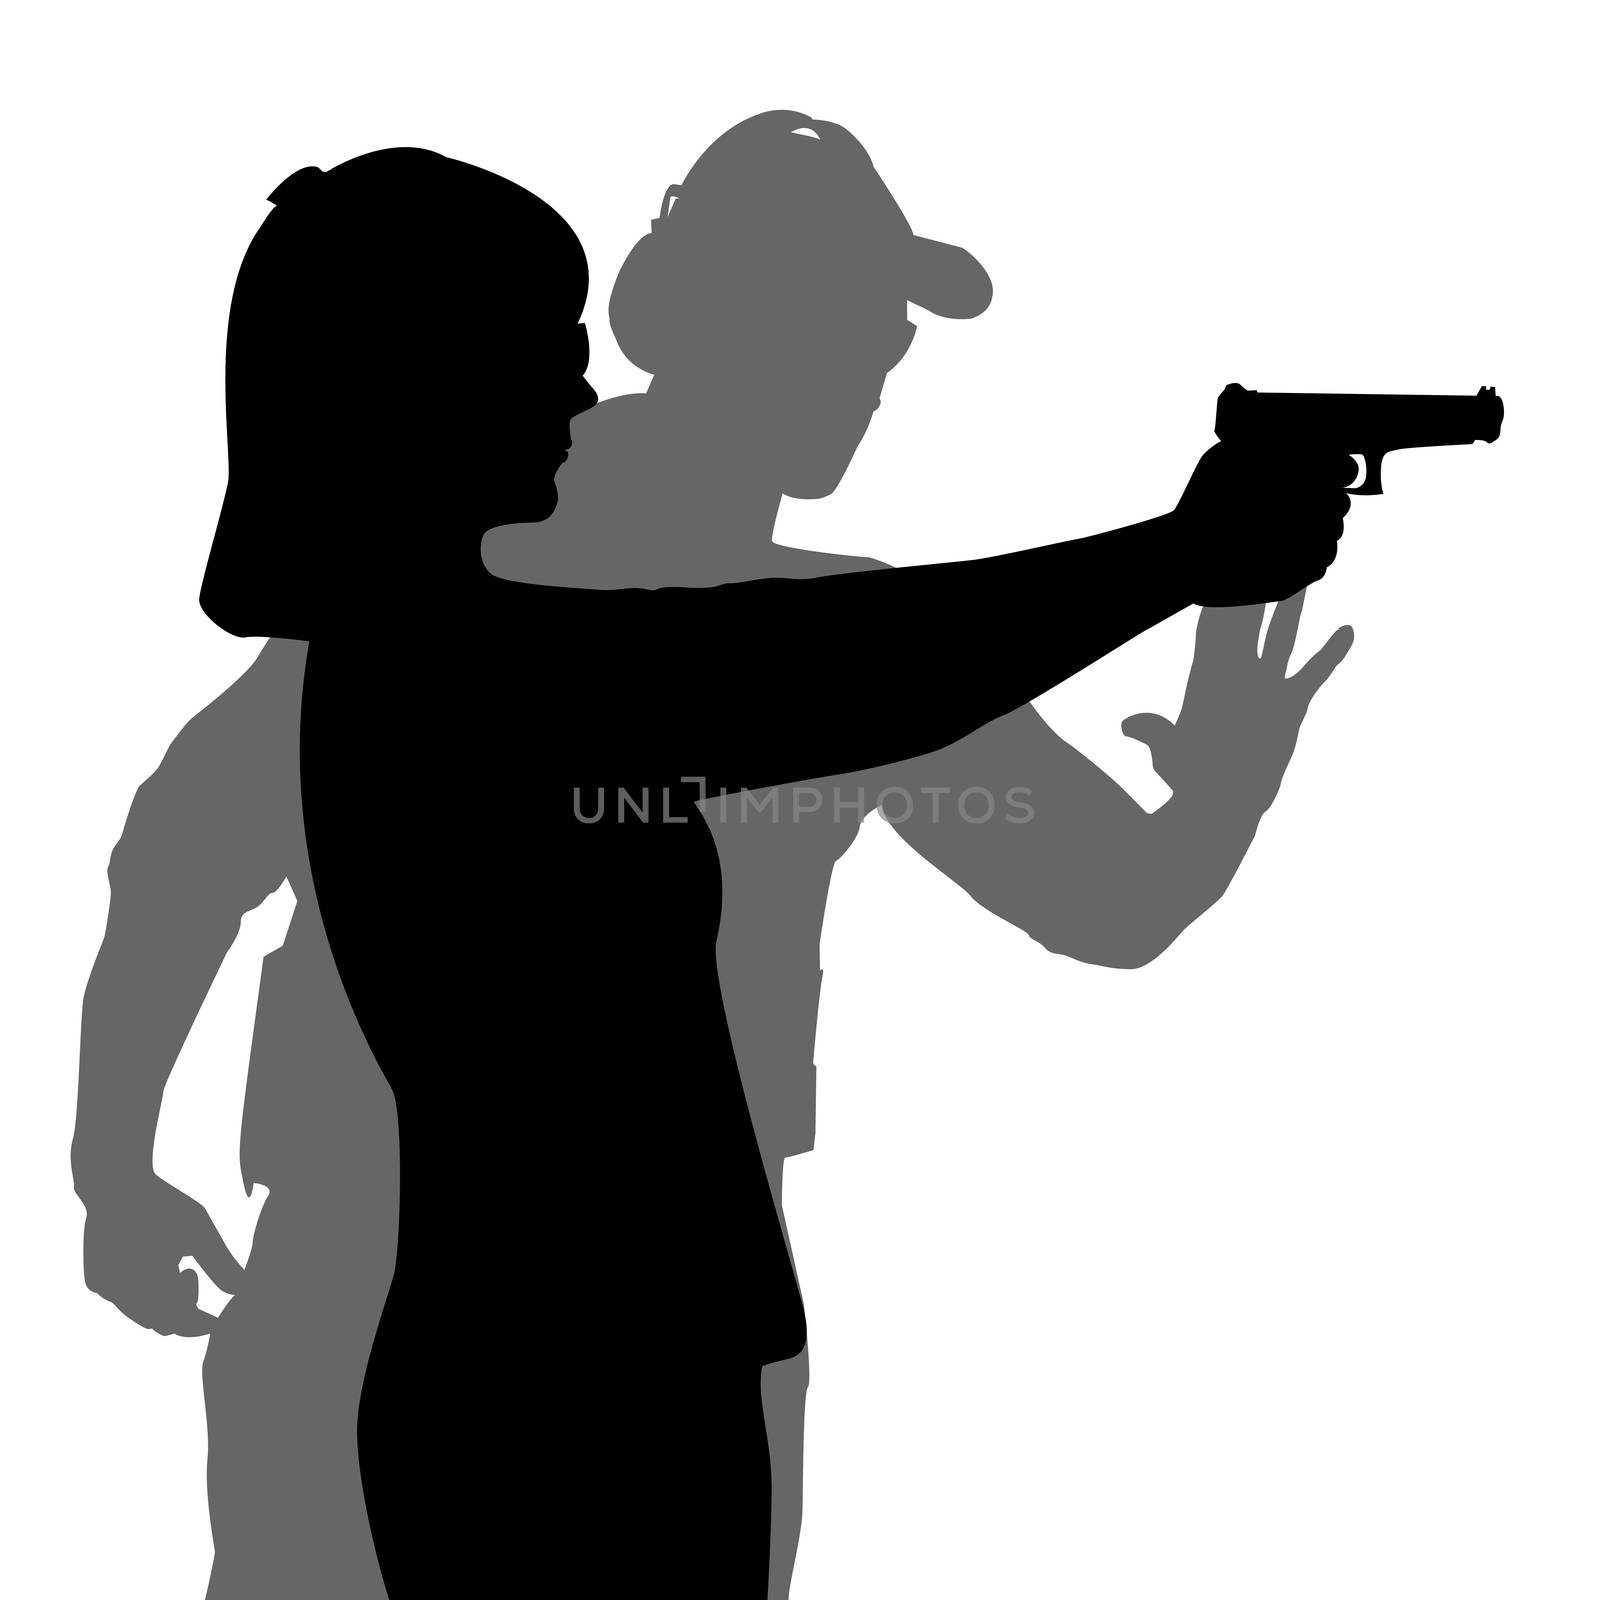 Instructor assisting woman aiming hand gun at firing range by hibrida13